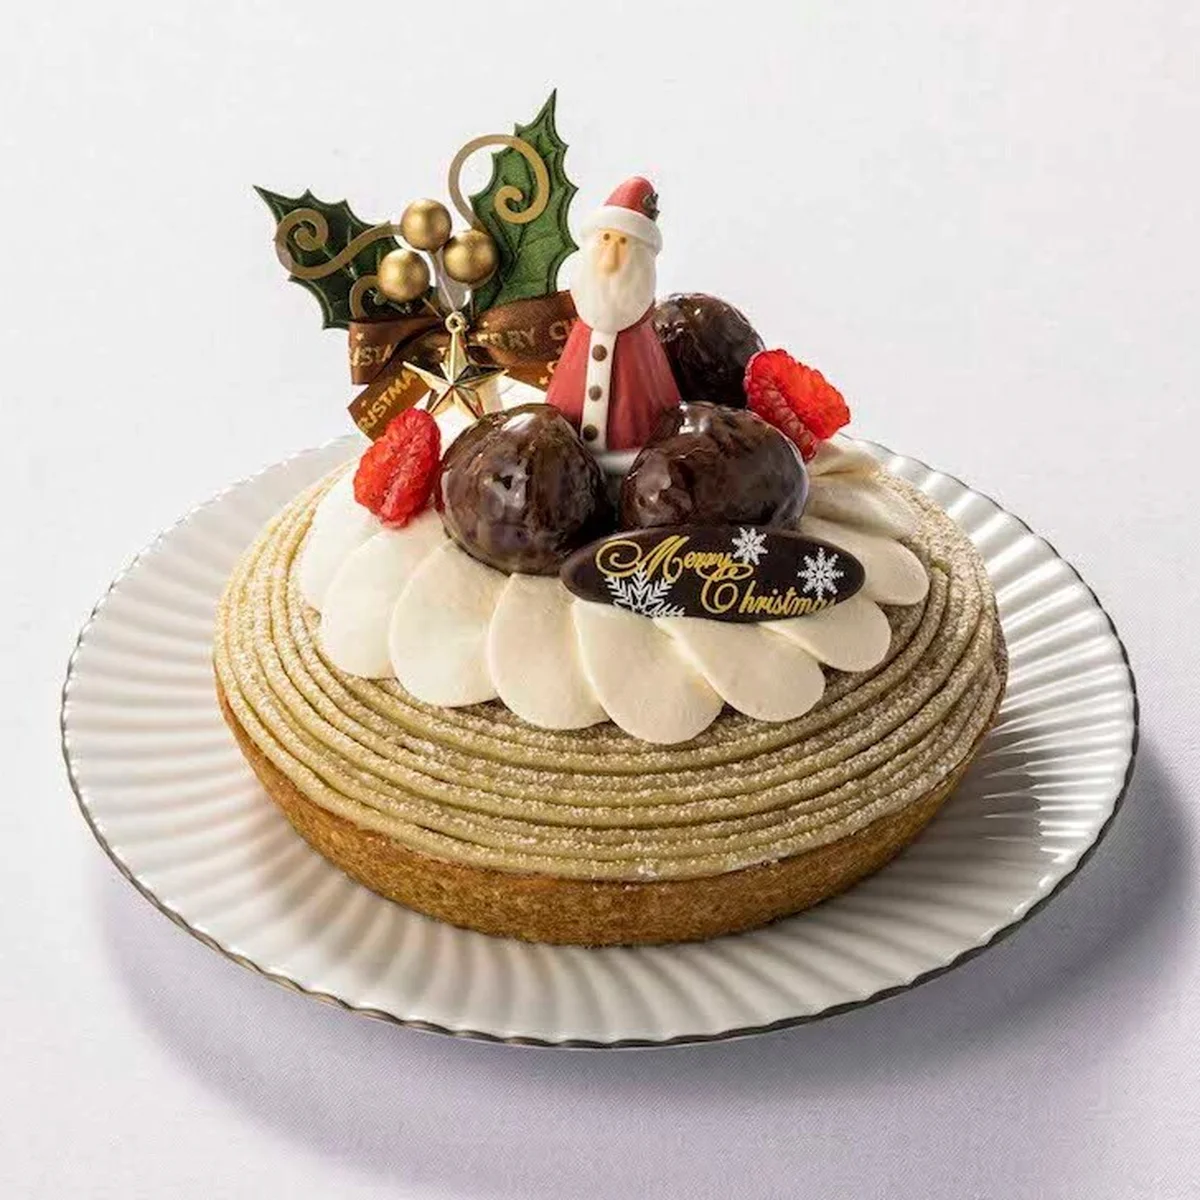 フォトジェニックで華やかなクリスマスケーキが勢揃い！ 松屋銀座でクリスマスケーキの予約を受付中